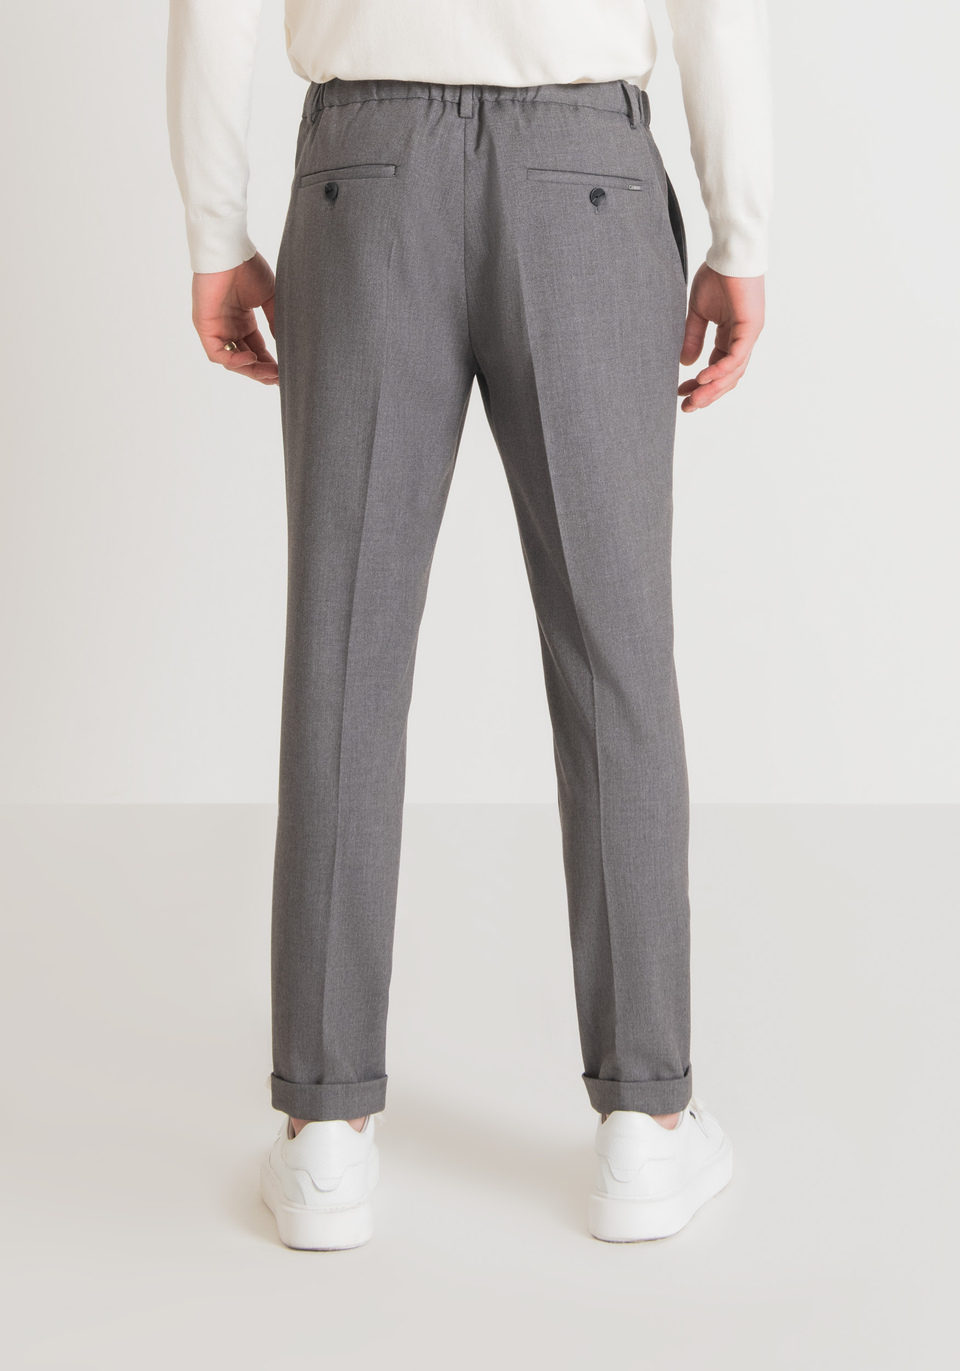 Buy max Men's Slim Casual Pants (TFCWBFS2203CTGREY_Grey at Amazon.in